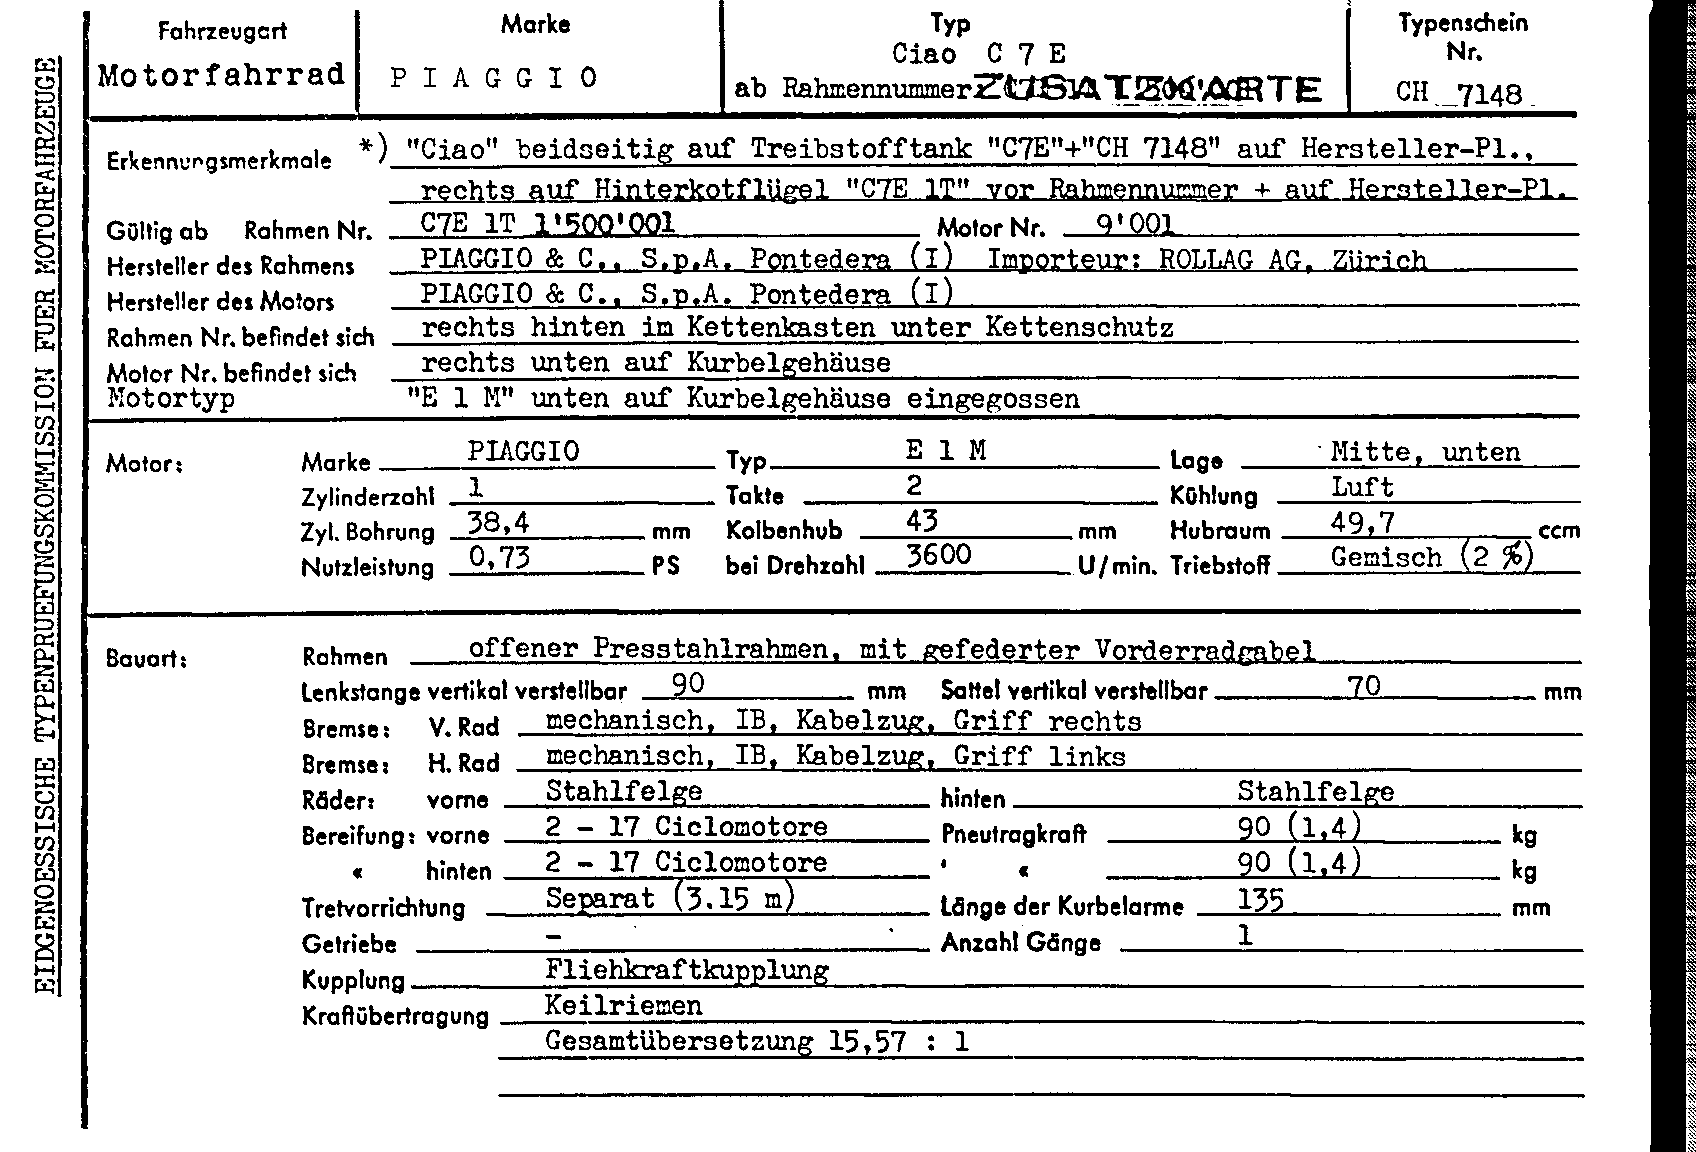 Swiss Certificate of Conformity 7148 German Page 1 (TG.DE.7148.1.png)